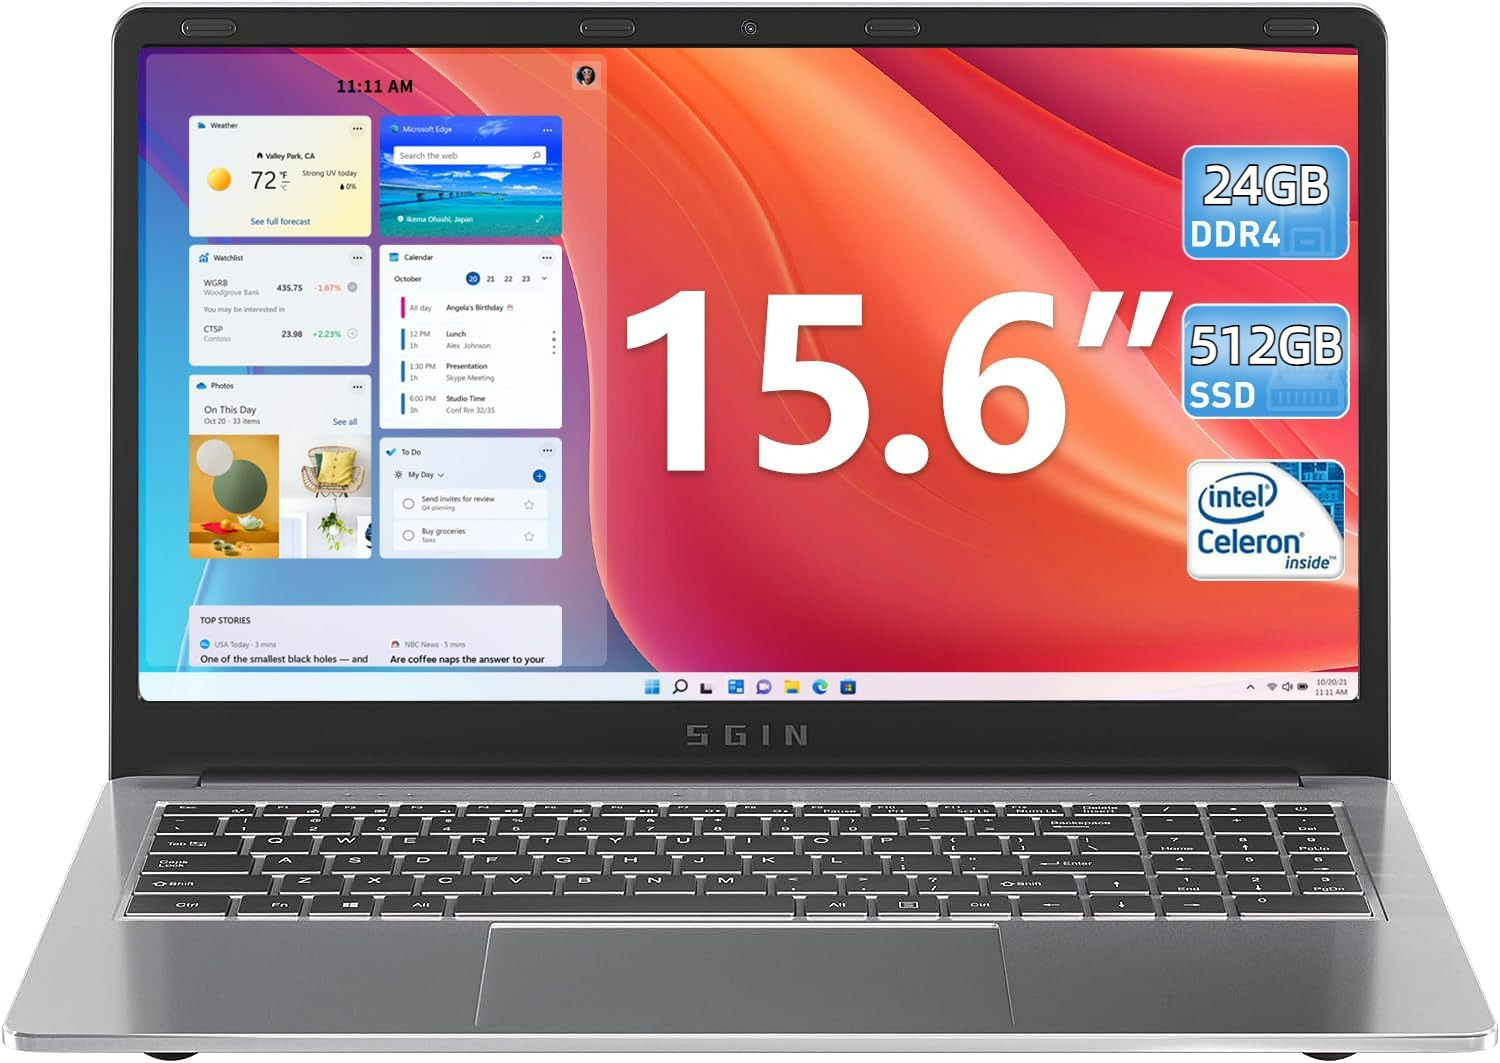 SGIN 15 '' Laptop 24GB DDR4 512GB SSD Computer with Intel Celeron N5095 2.9GHz